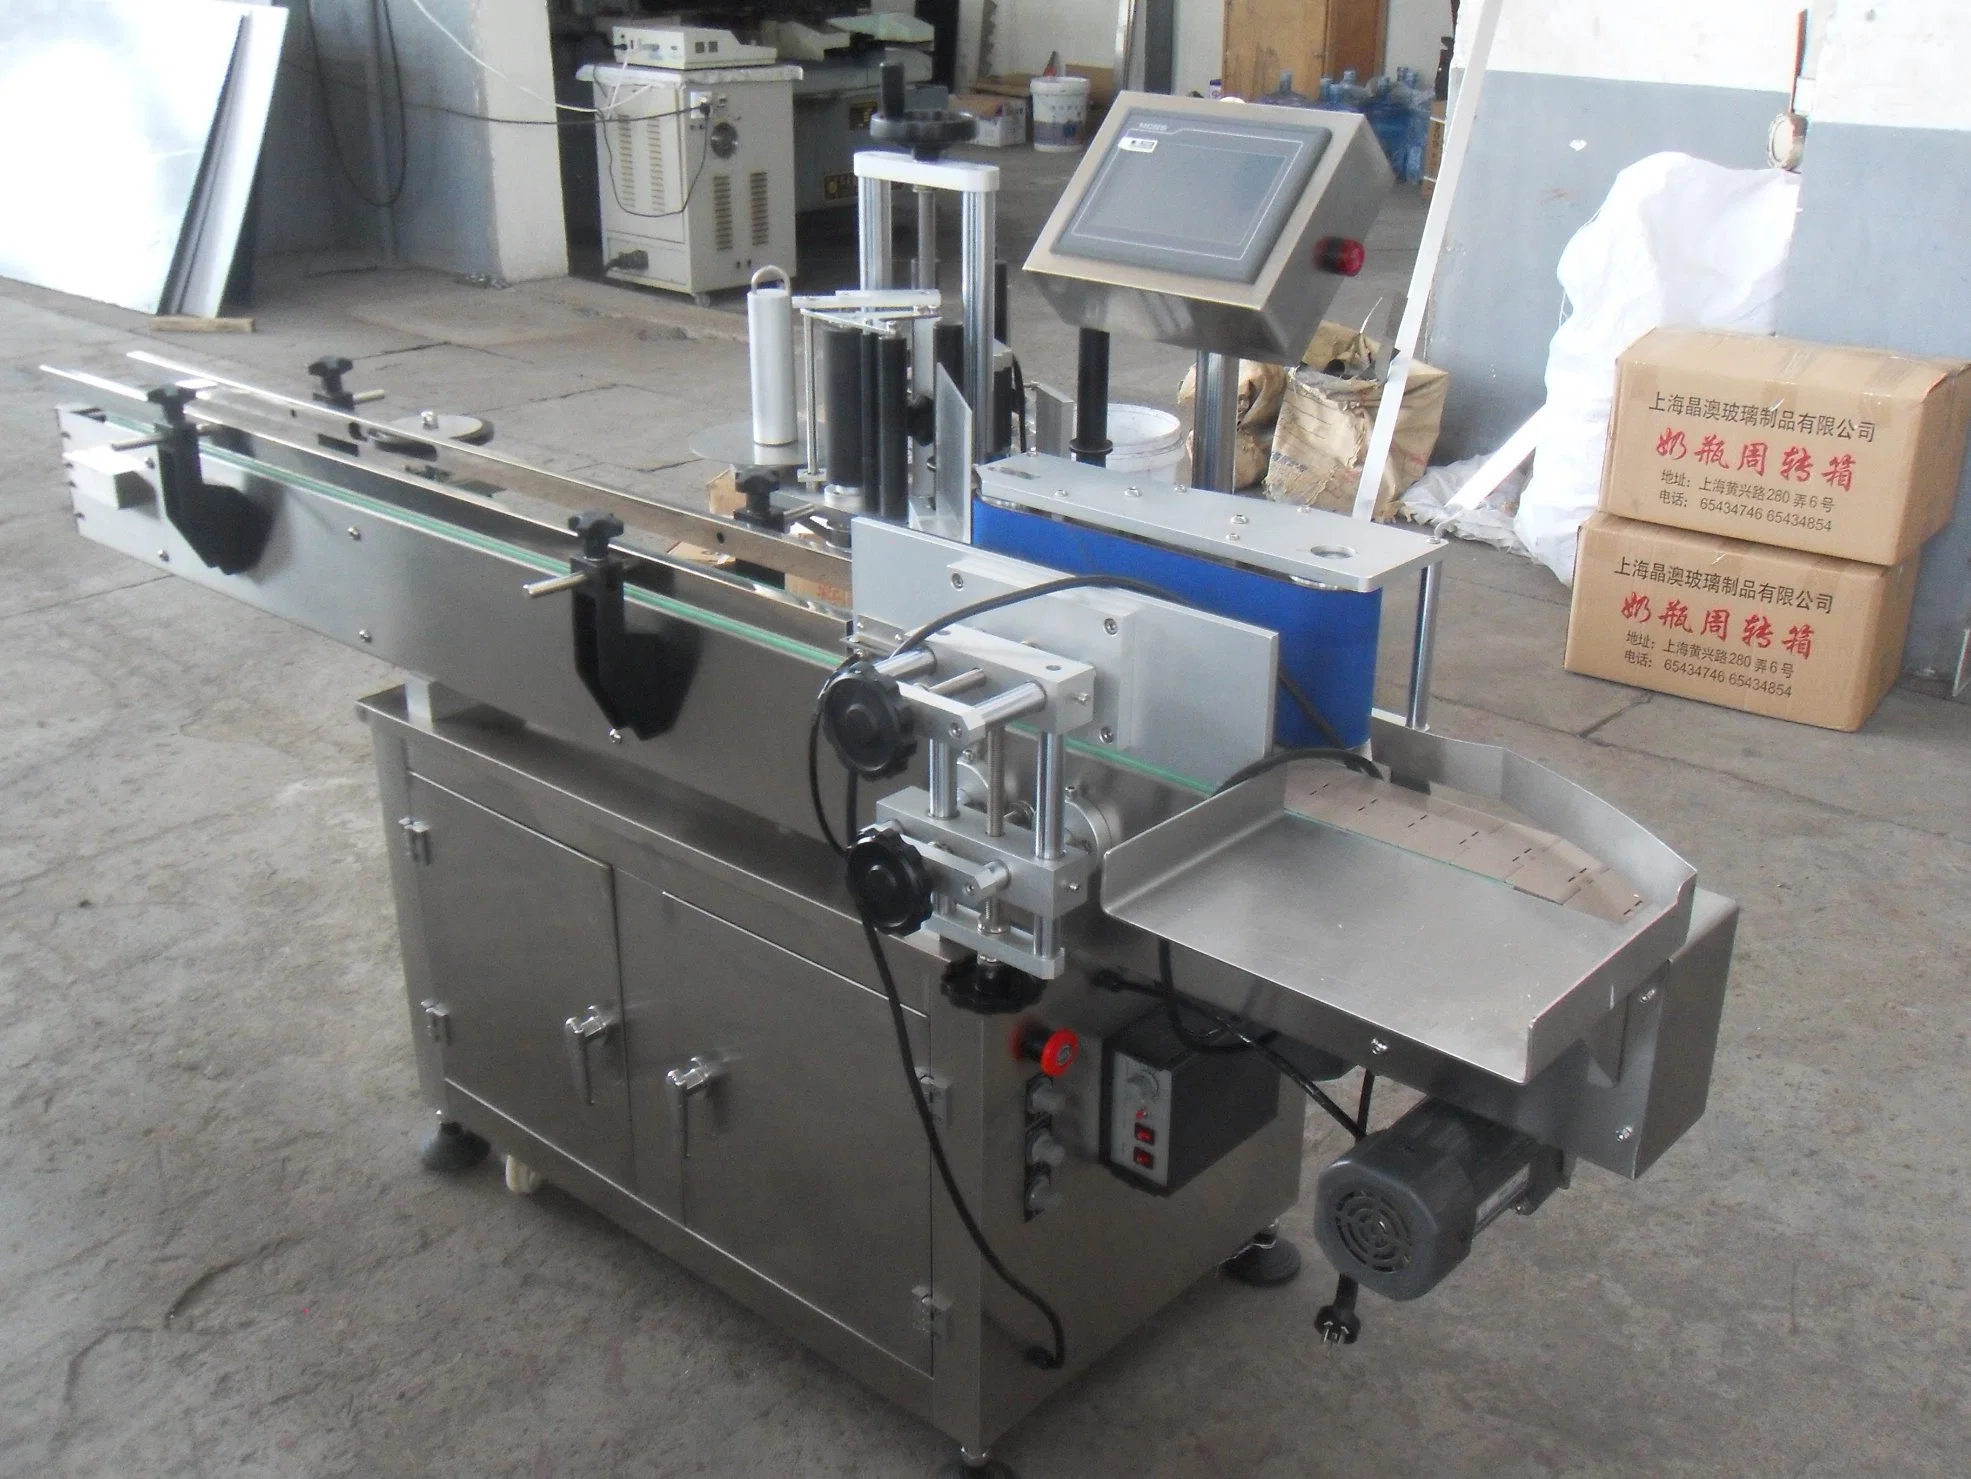 Máquina de etiquetagem amplamente utilizada em eletrónica, bebidas, impressão e outras indústrias